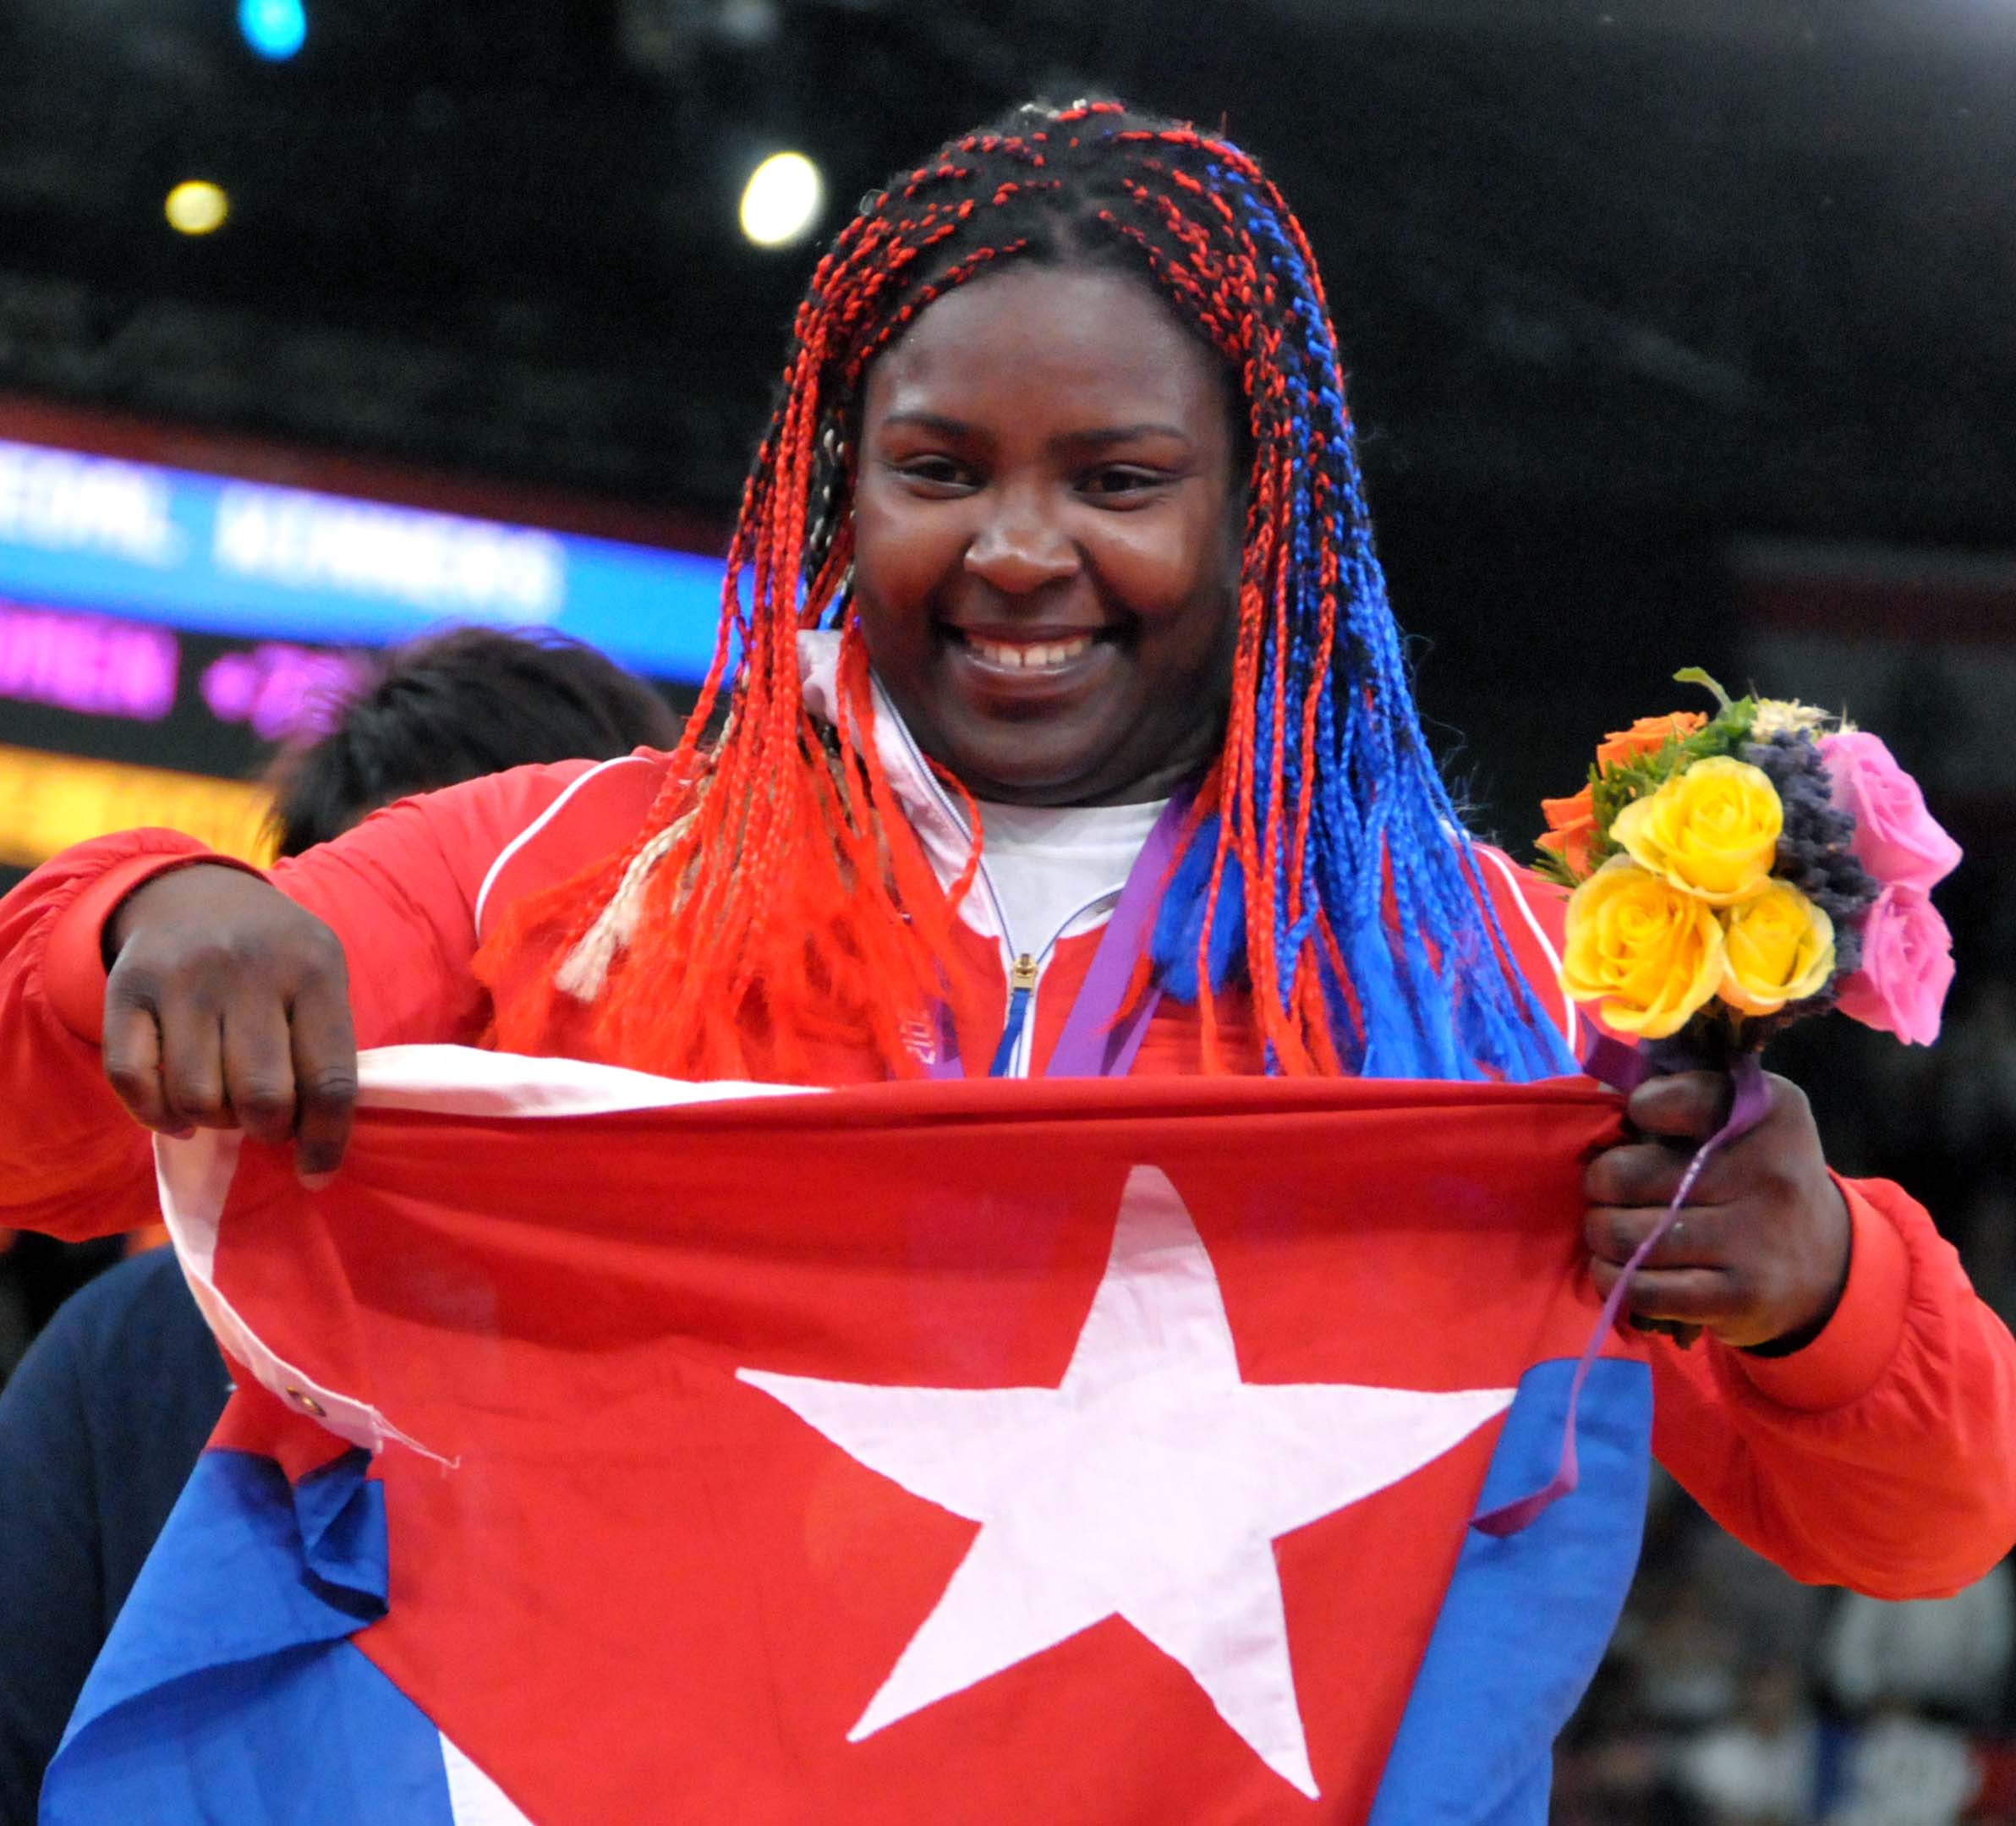 La judoca cubana Idalys Ortiz cuando alcanzó la gloria olímpica en los Juegos Olímpicos de Londres. FOTO: Marcelino VAZQUEZ HERNANDEZ/